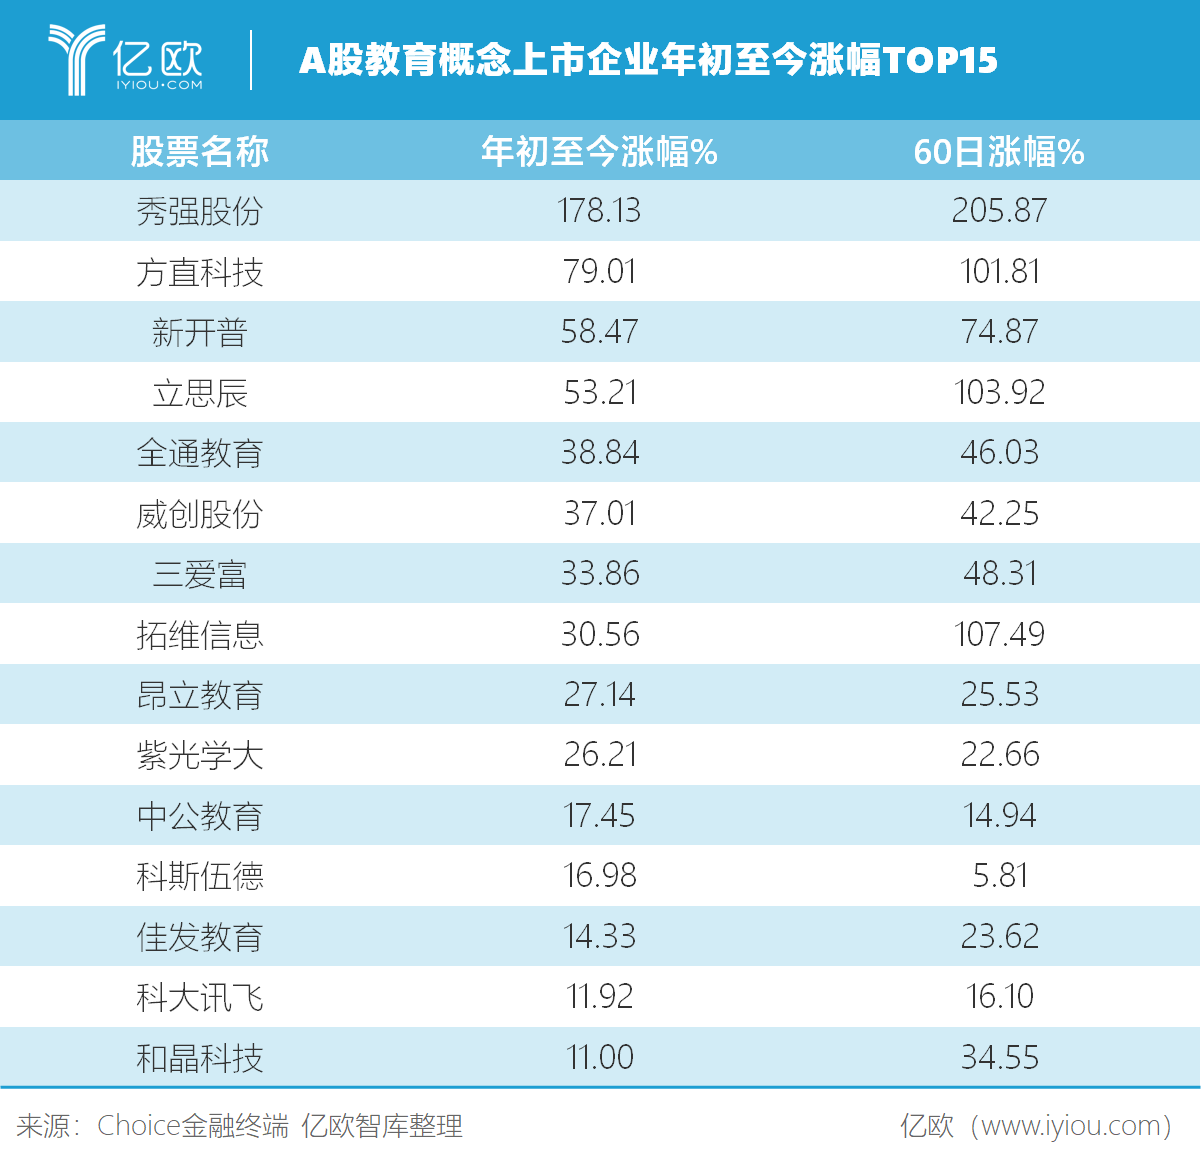 亿欧：A股教育概念上市企业年初至今涨幅TOP15